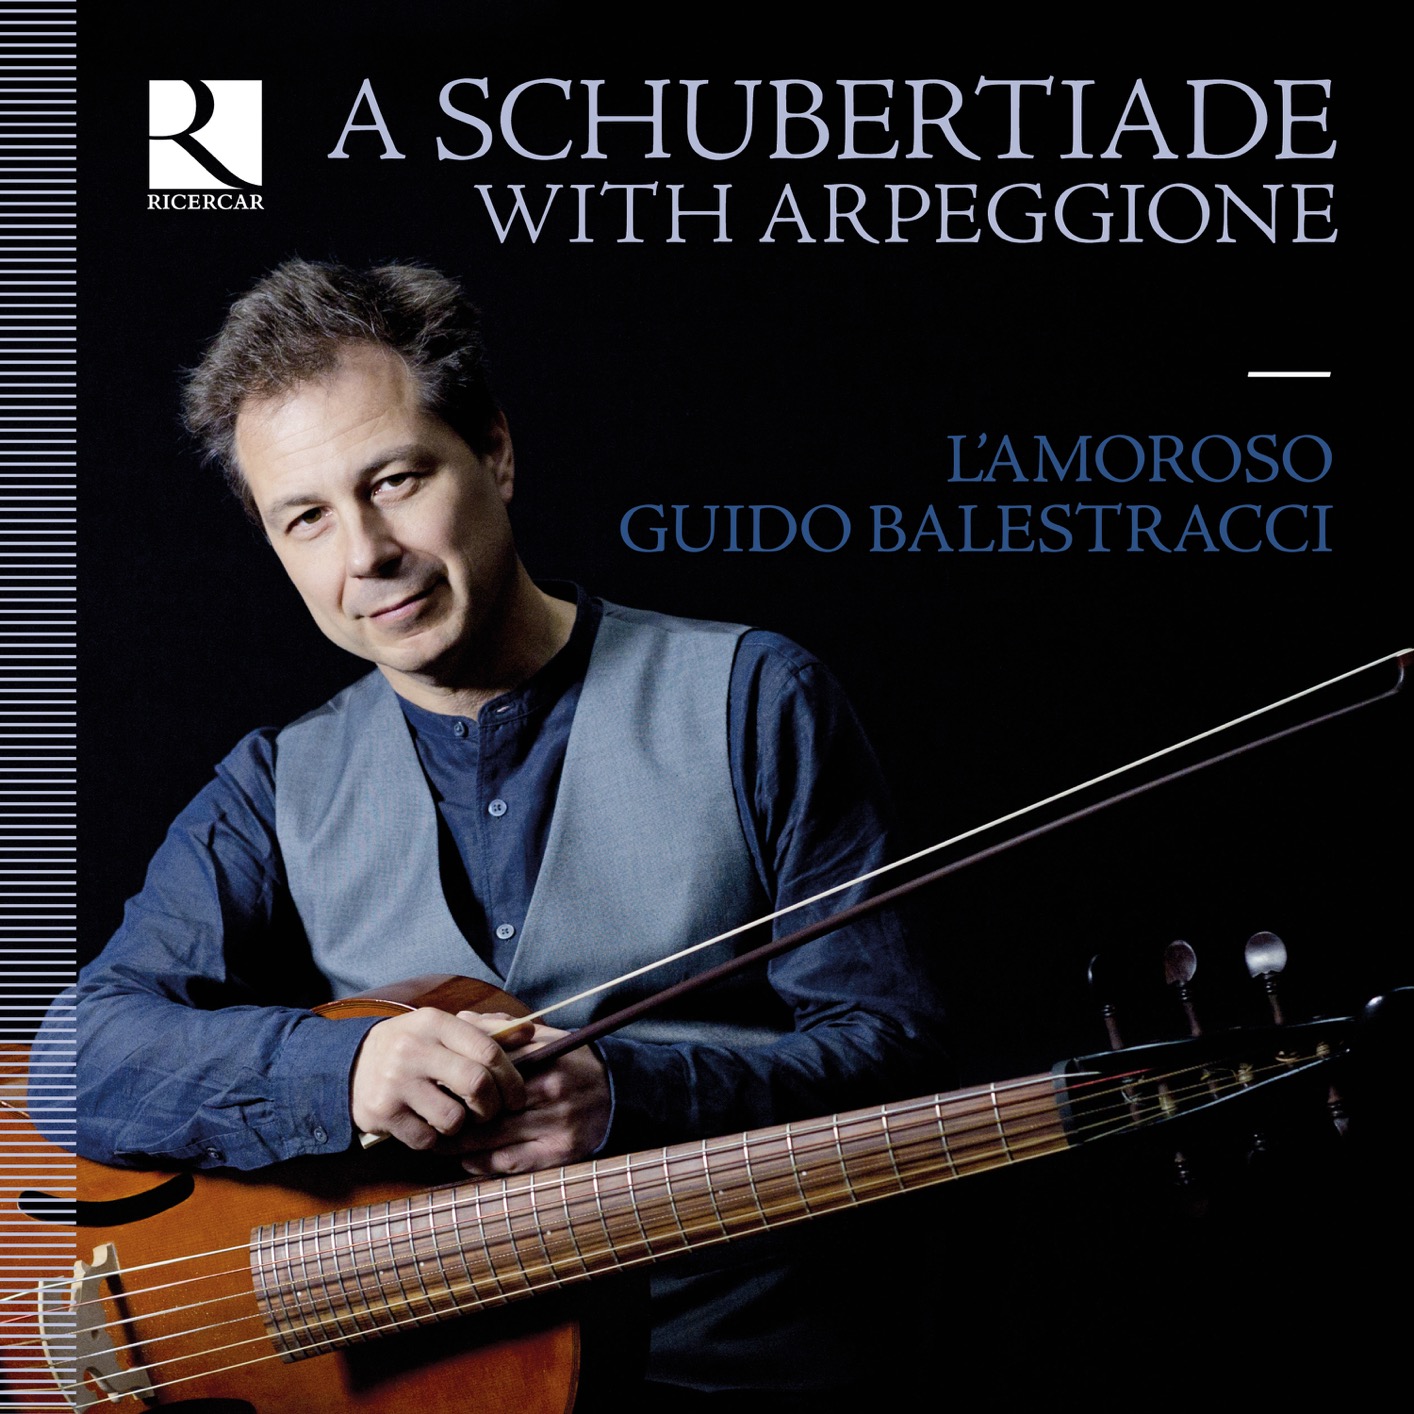 L’Amoroso & Guido Balestracci – A Schubertiade with Arpeggione (2020) [FLAC 24bit/176,4kHz]